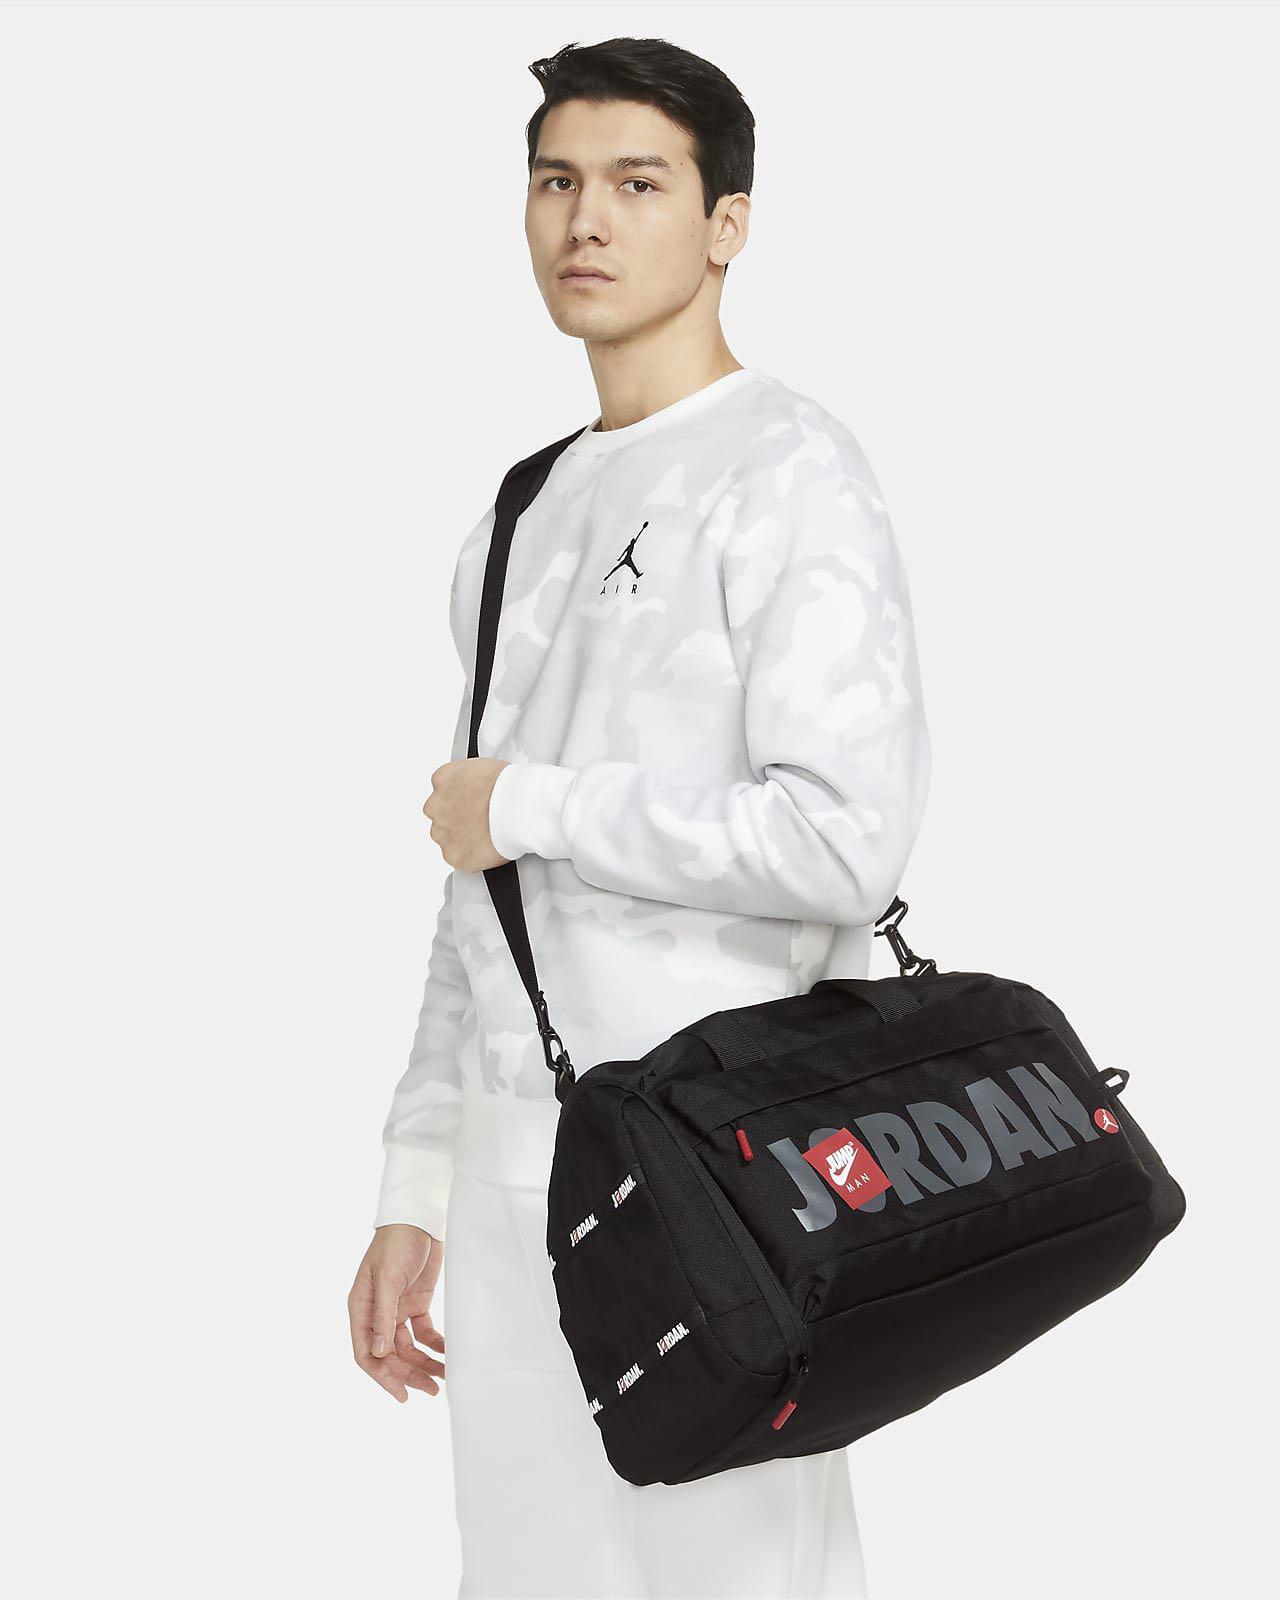 Jordan Jumpman Duffel Bag (Medium).